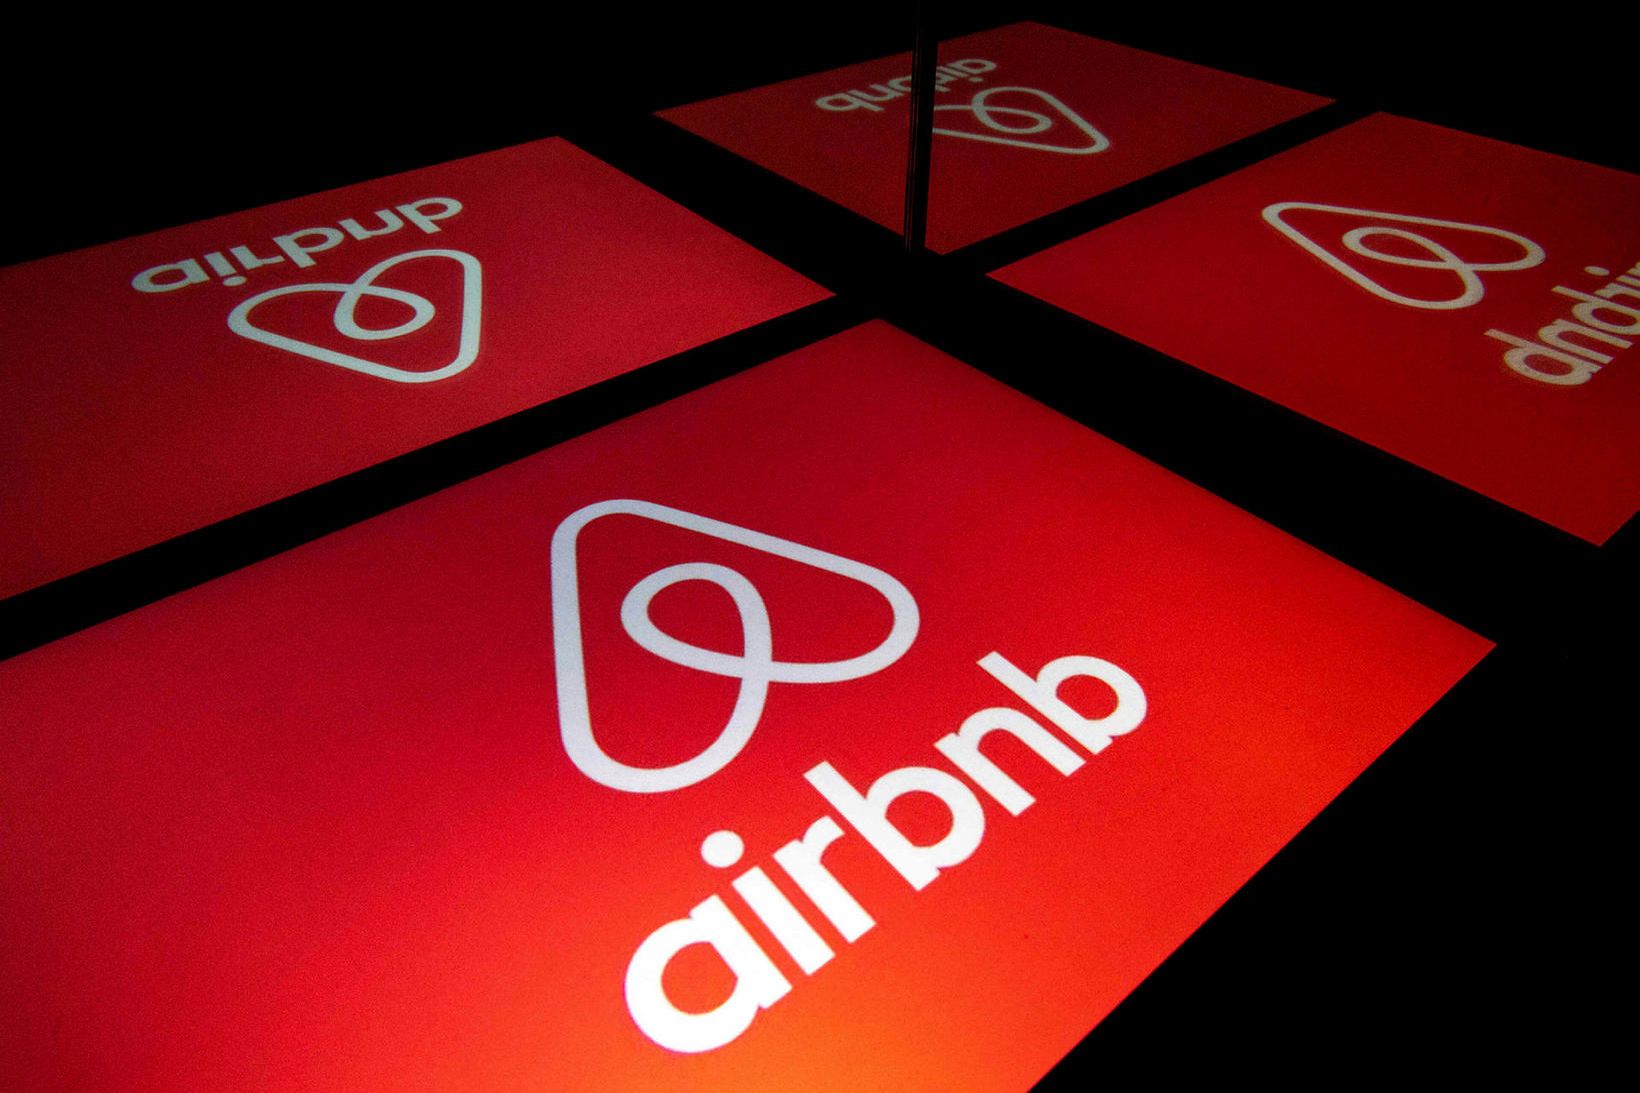 Airbnb tífaldar sektir til að reyna að sporna við fyrirsjáanlegum …